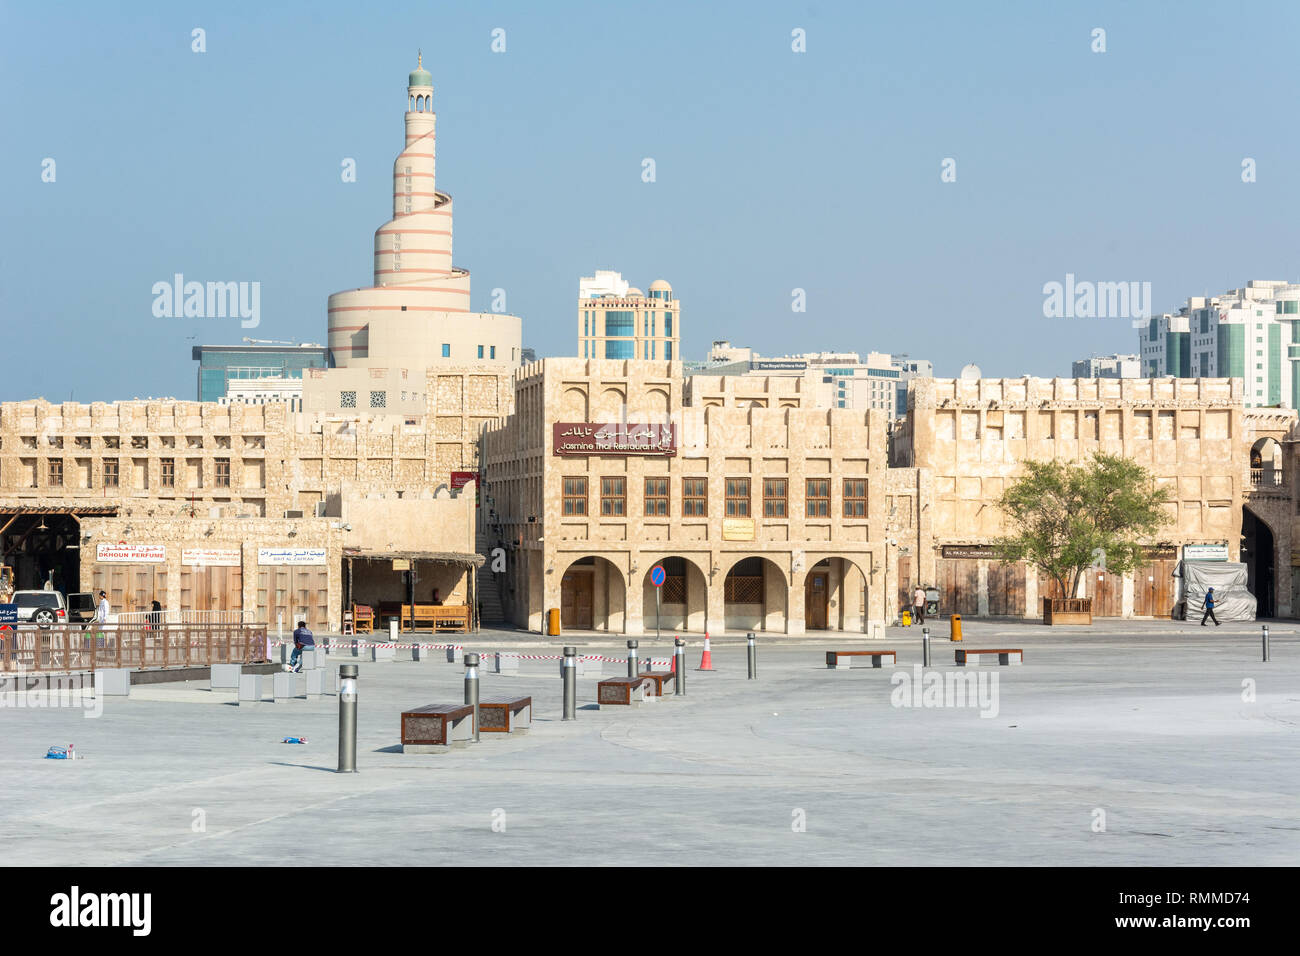 Doha, Katar - 3. November 2016. Blick auf einen öffentlichen Platz in Doha mit Bin Zaid Al Mahmoud Islamischen Kulturzentrum (fanar), moderne Wohn- und commerc Stockfoto